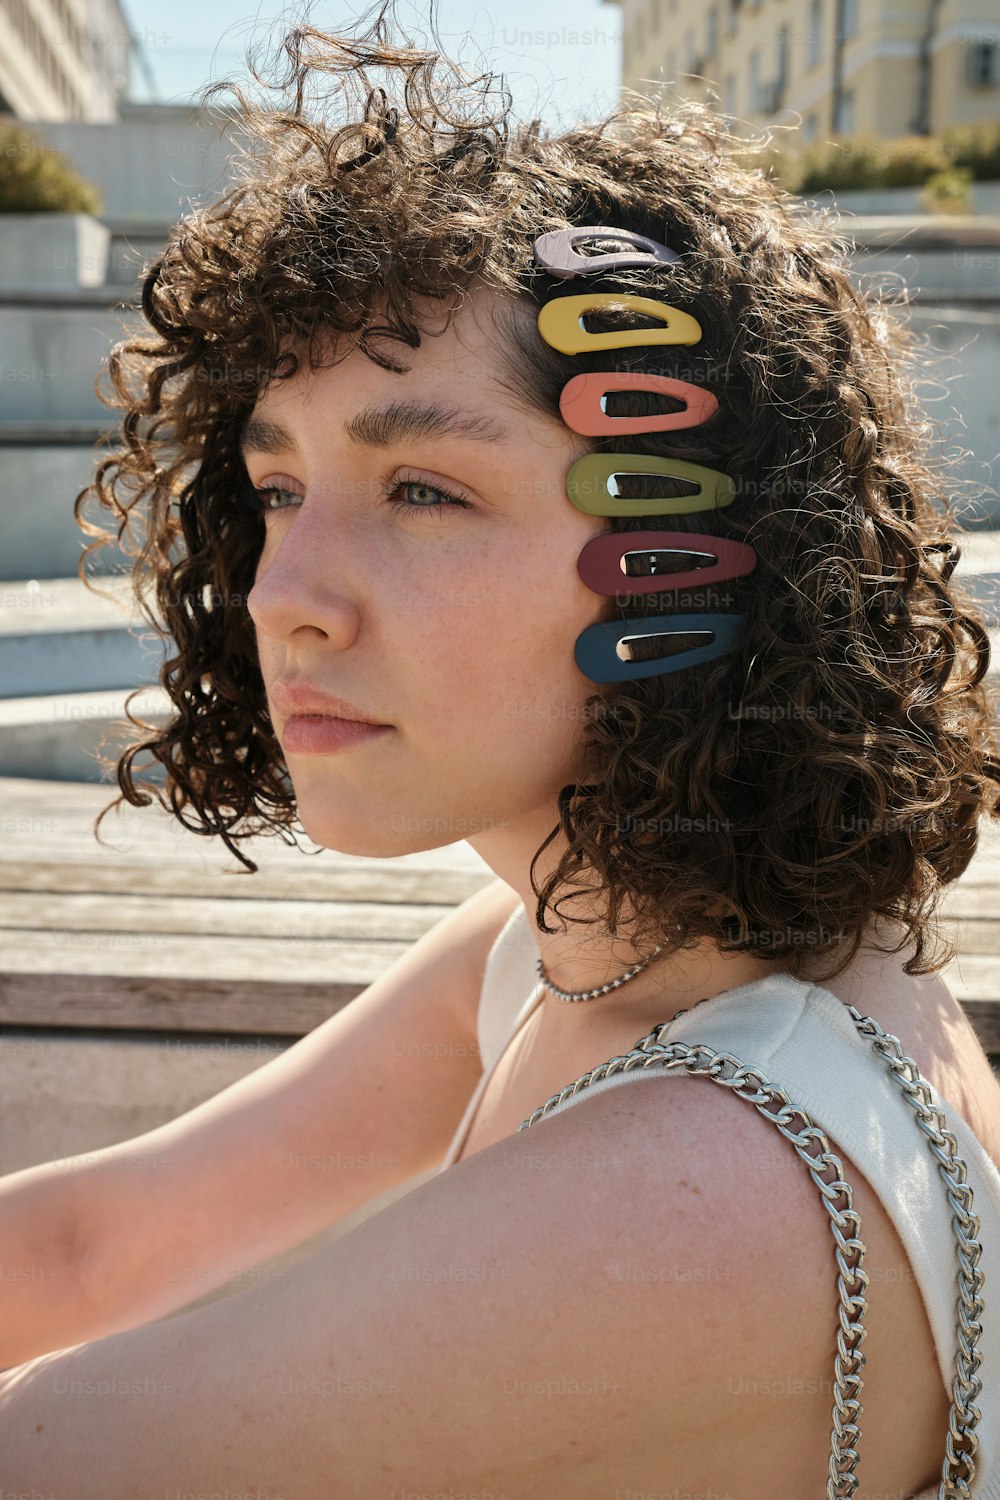 Eine Frau mit lockigem Haar hat einen Haufen Haarspangen auf dem Kopf